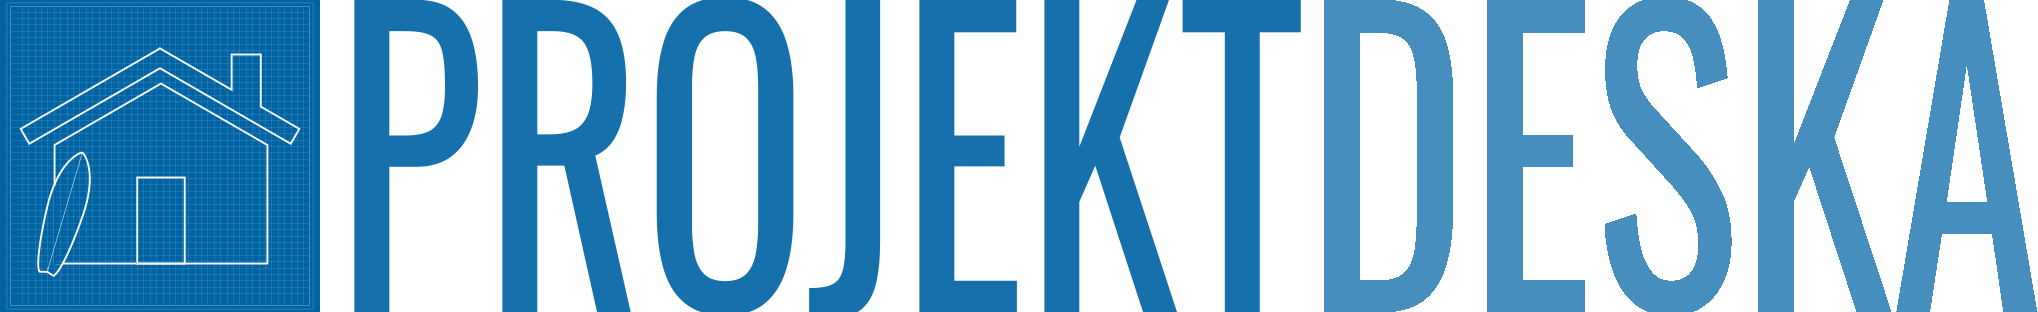 Logo projektdeska.pl